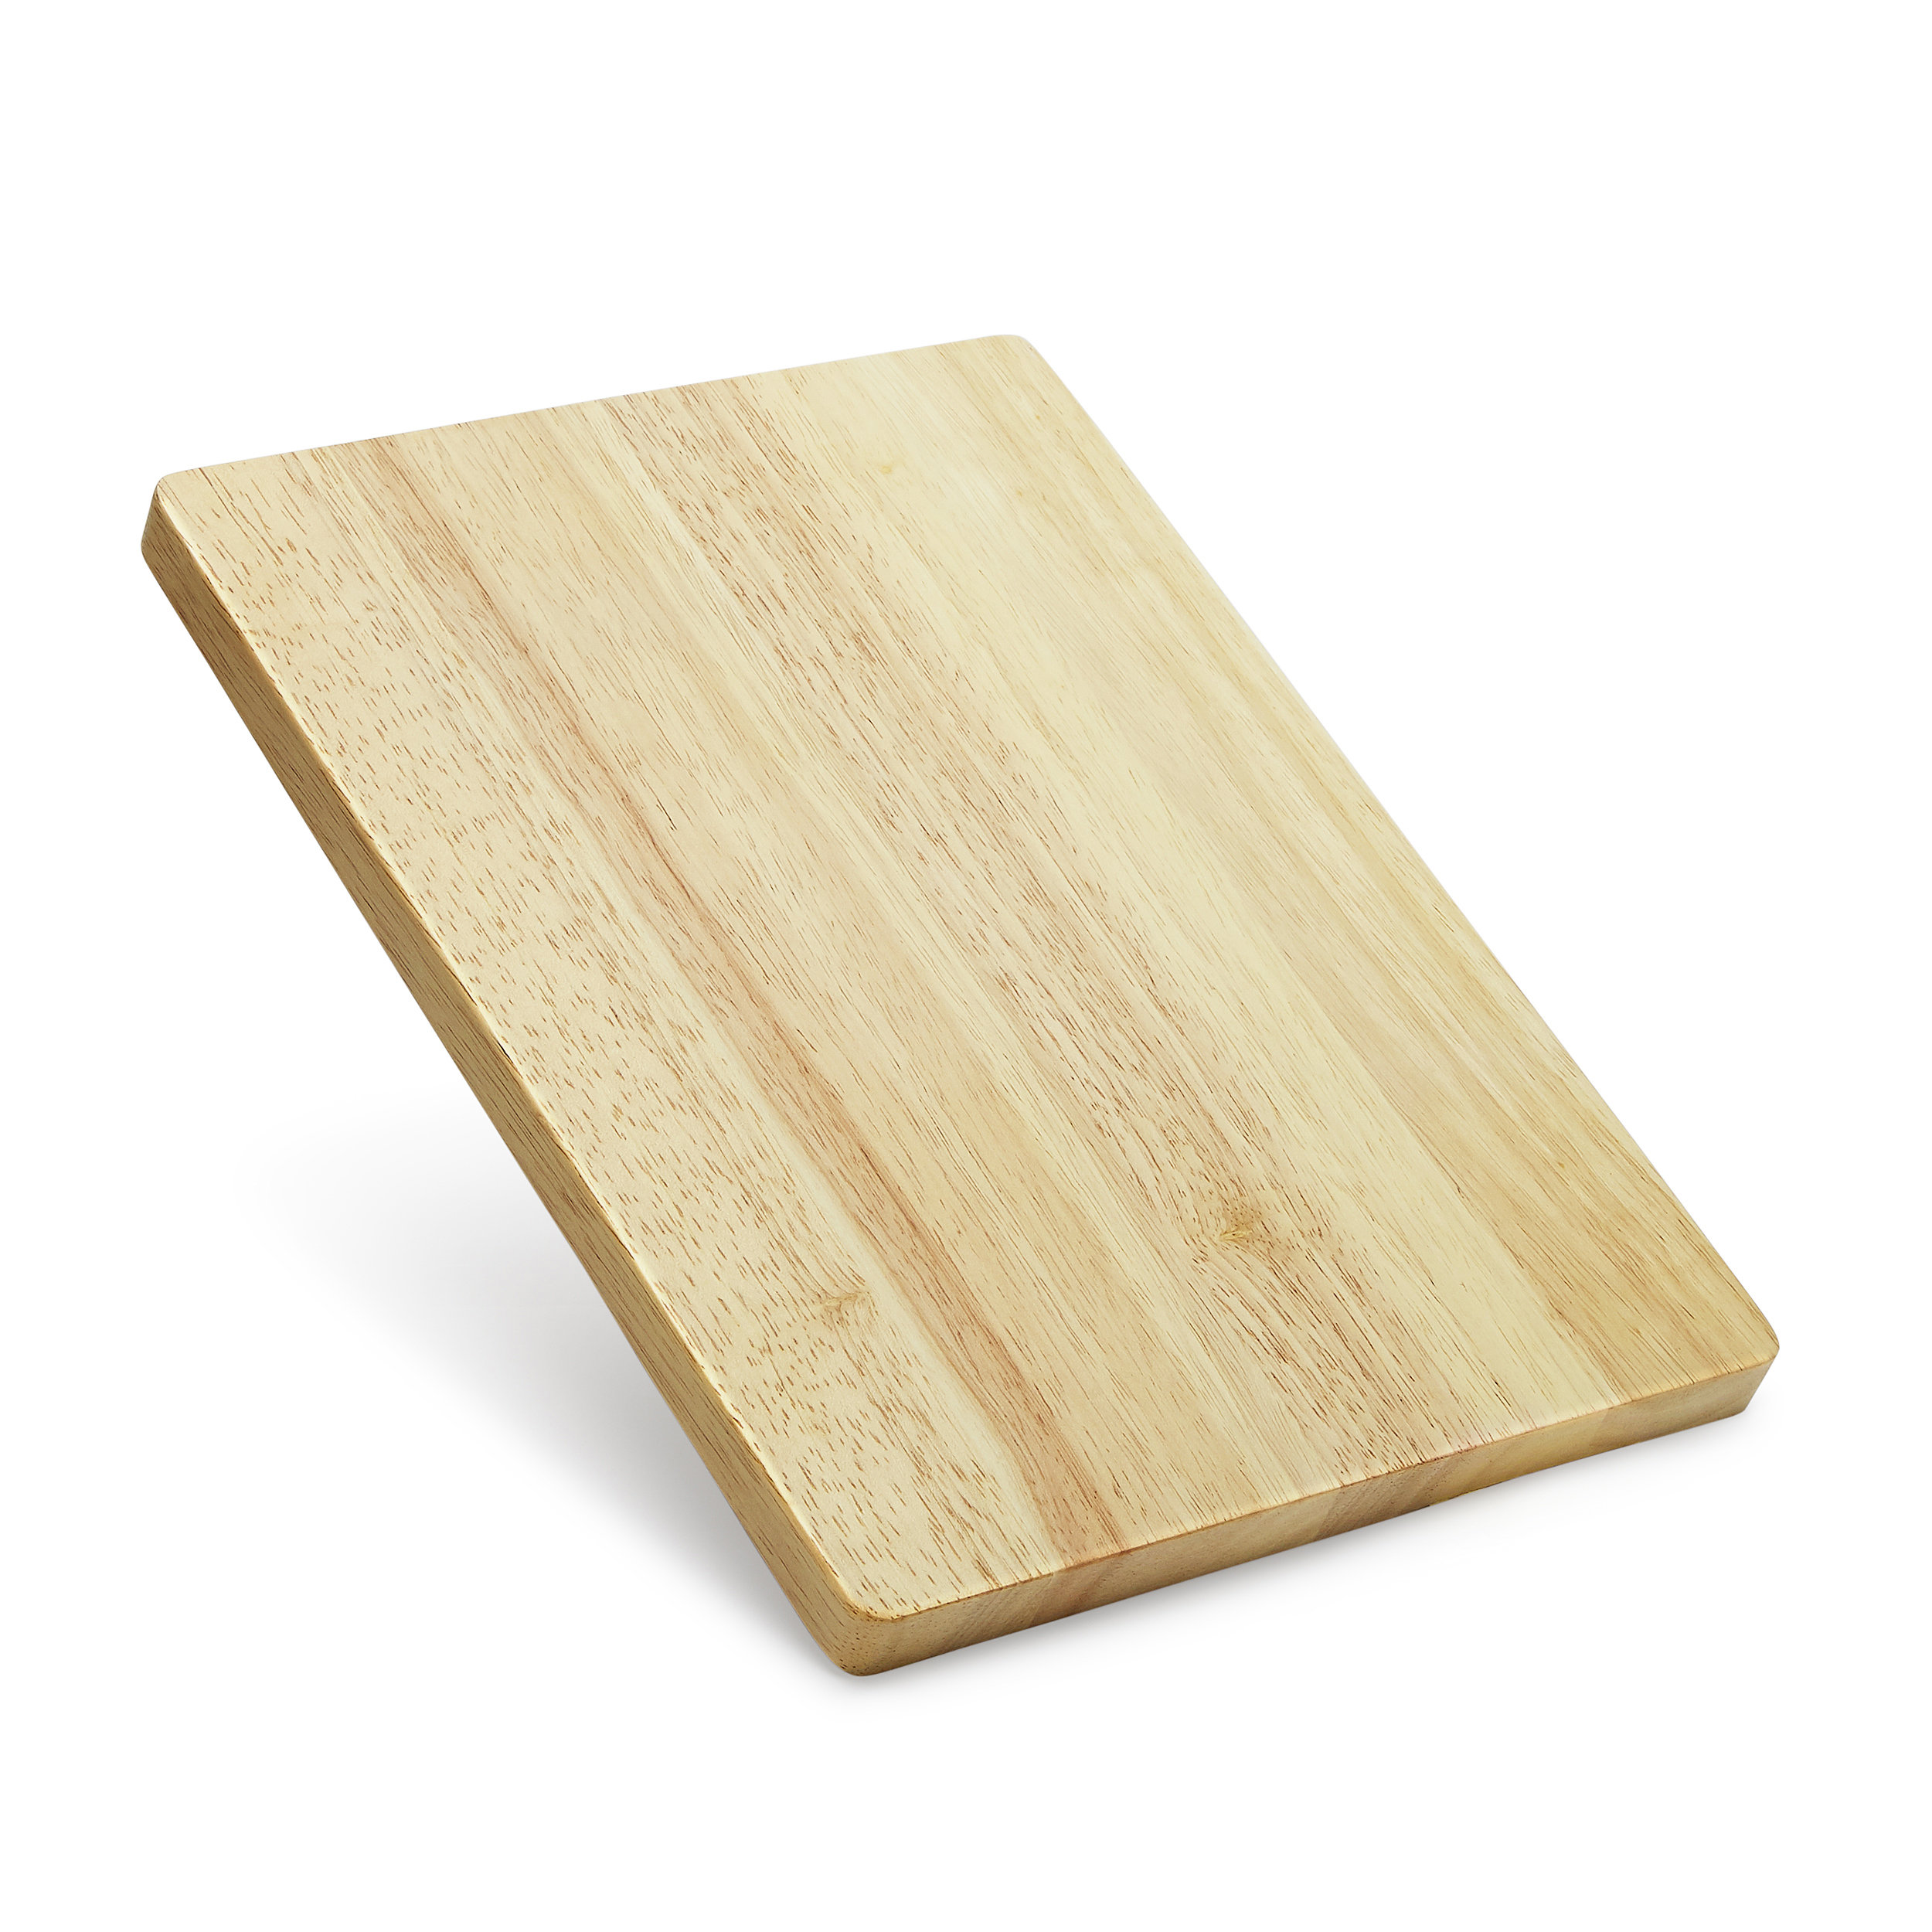 https://assets.wfcdn.com/im/35957855/compr-r85/2160/216077109/makerflo-rubber-wood-cutting-board-14-x-10-inch-butcher-block-handmade-gifts.jpg